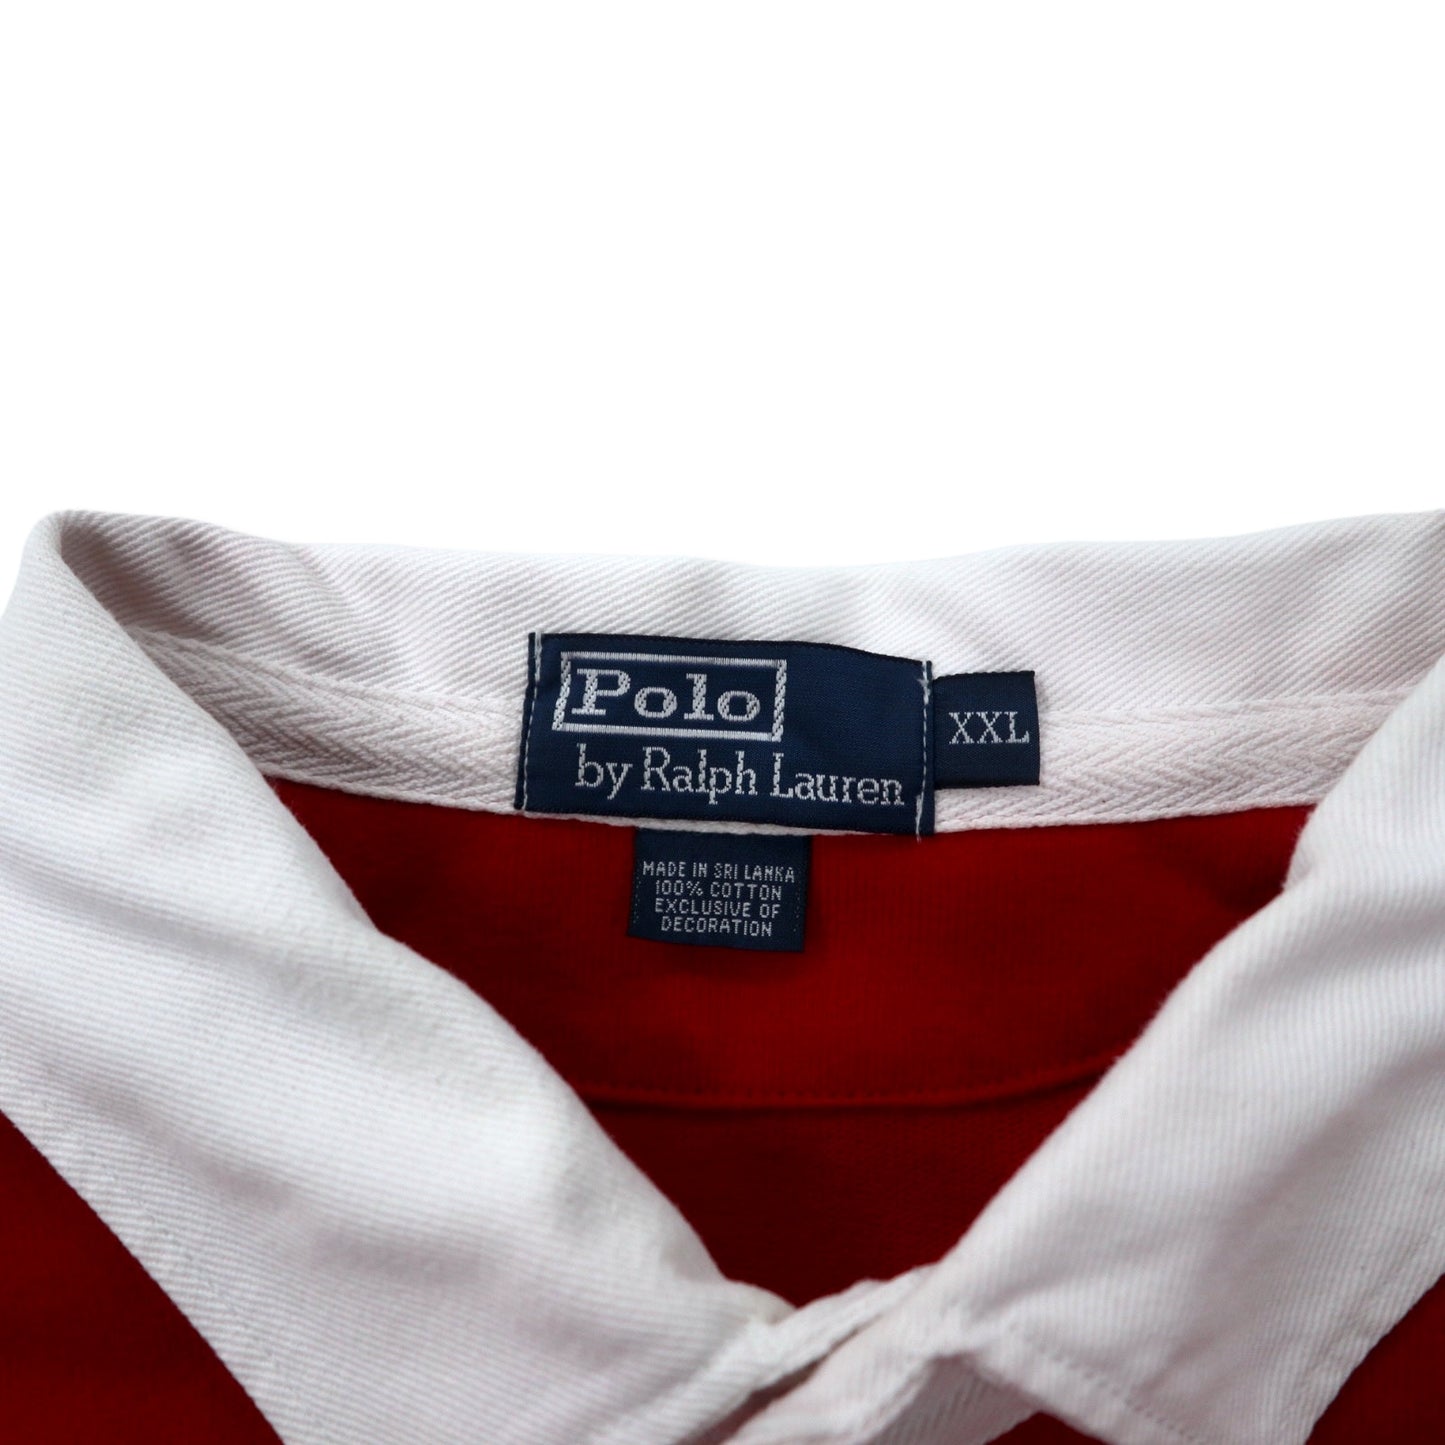 Polo by Ralph Lauren ラガーシャツ XXL レッド コットン ポニー刺繍